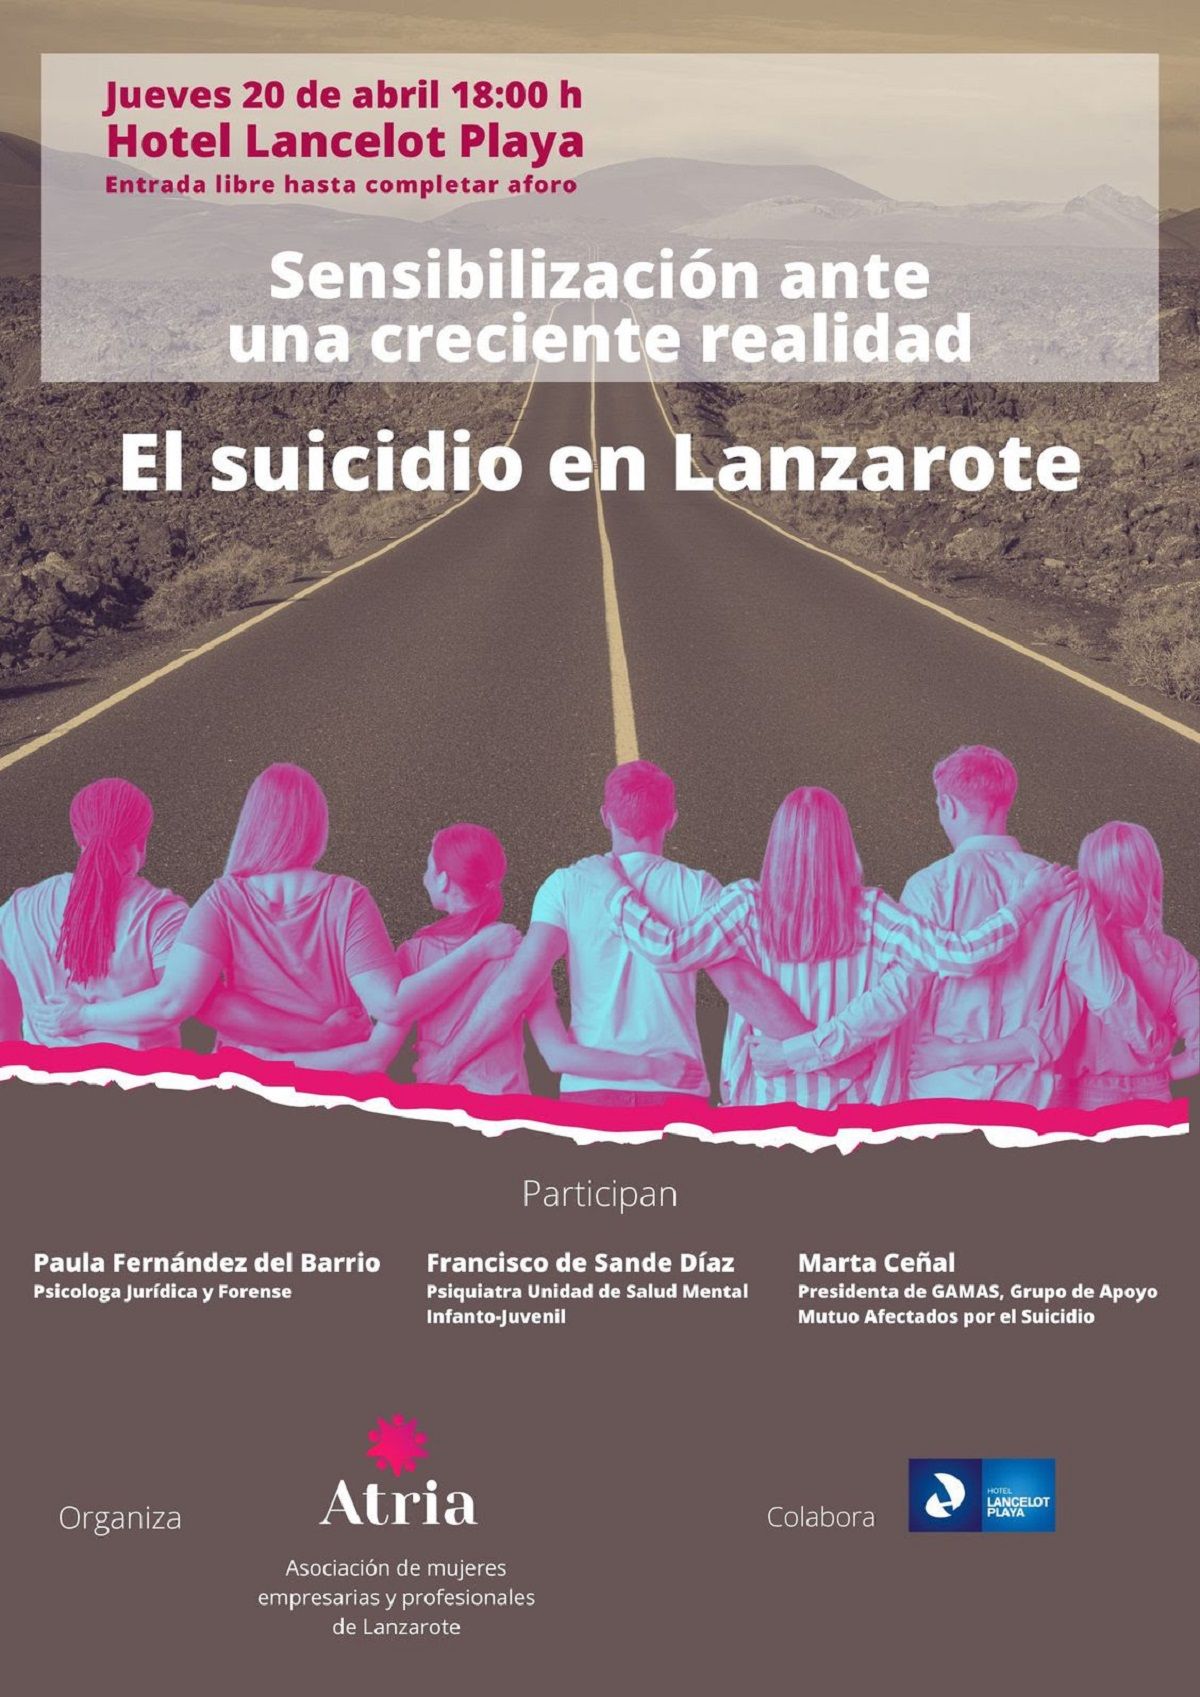 La asociación de mujeres Atria aborda el suicidio y su creciente incidencia en Lanzarote